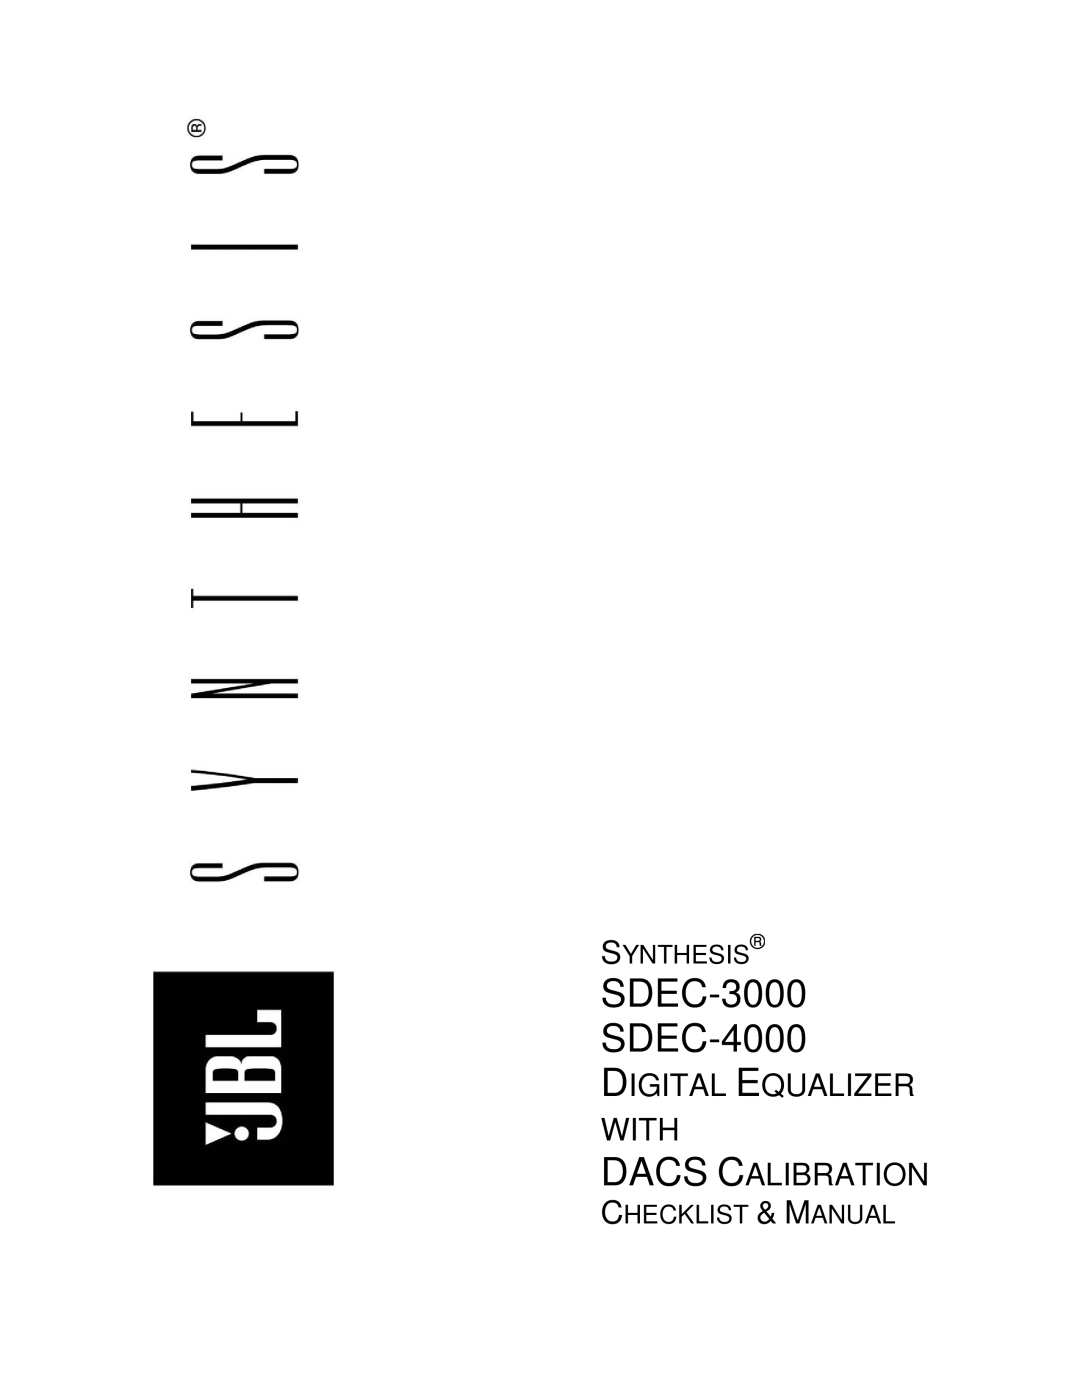 JBL manual SDEC-3000 SDEC-4000, Synthesis, Digital Equalizer, Installer’S Manual 